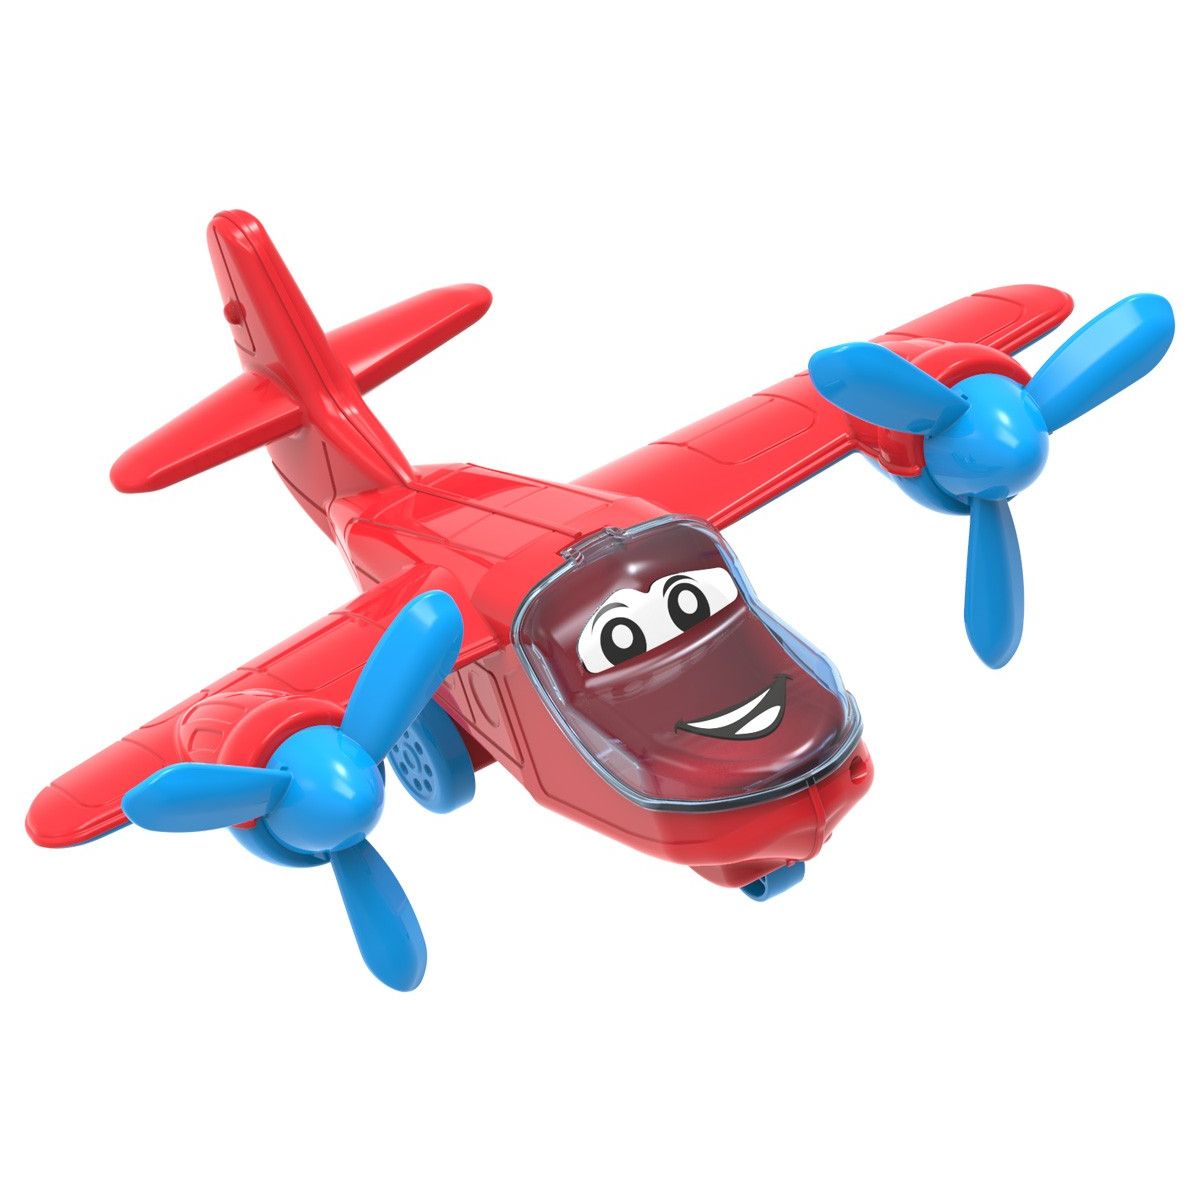 Пластиковая игрушка "Самолет" (красный)